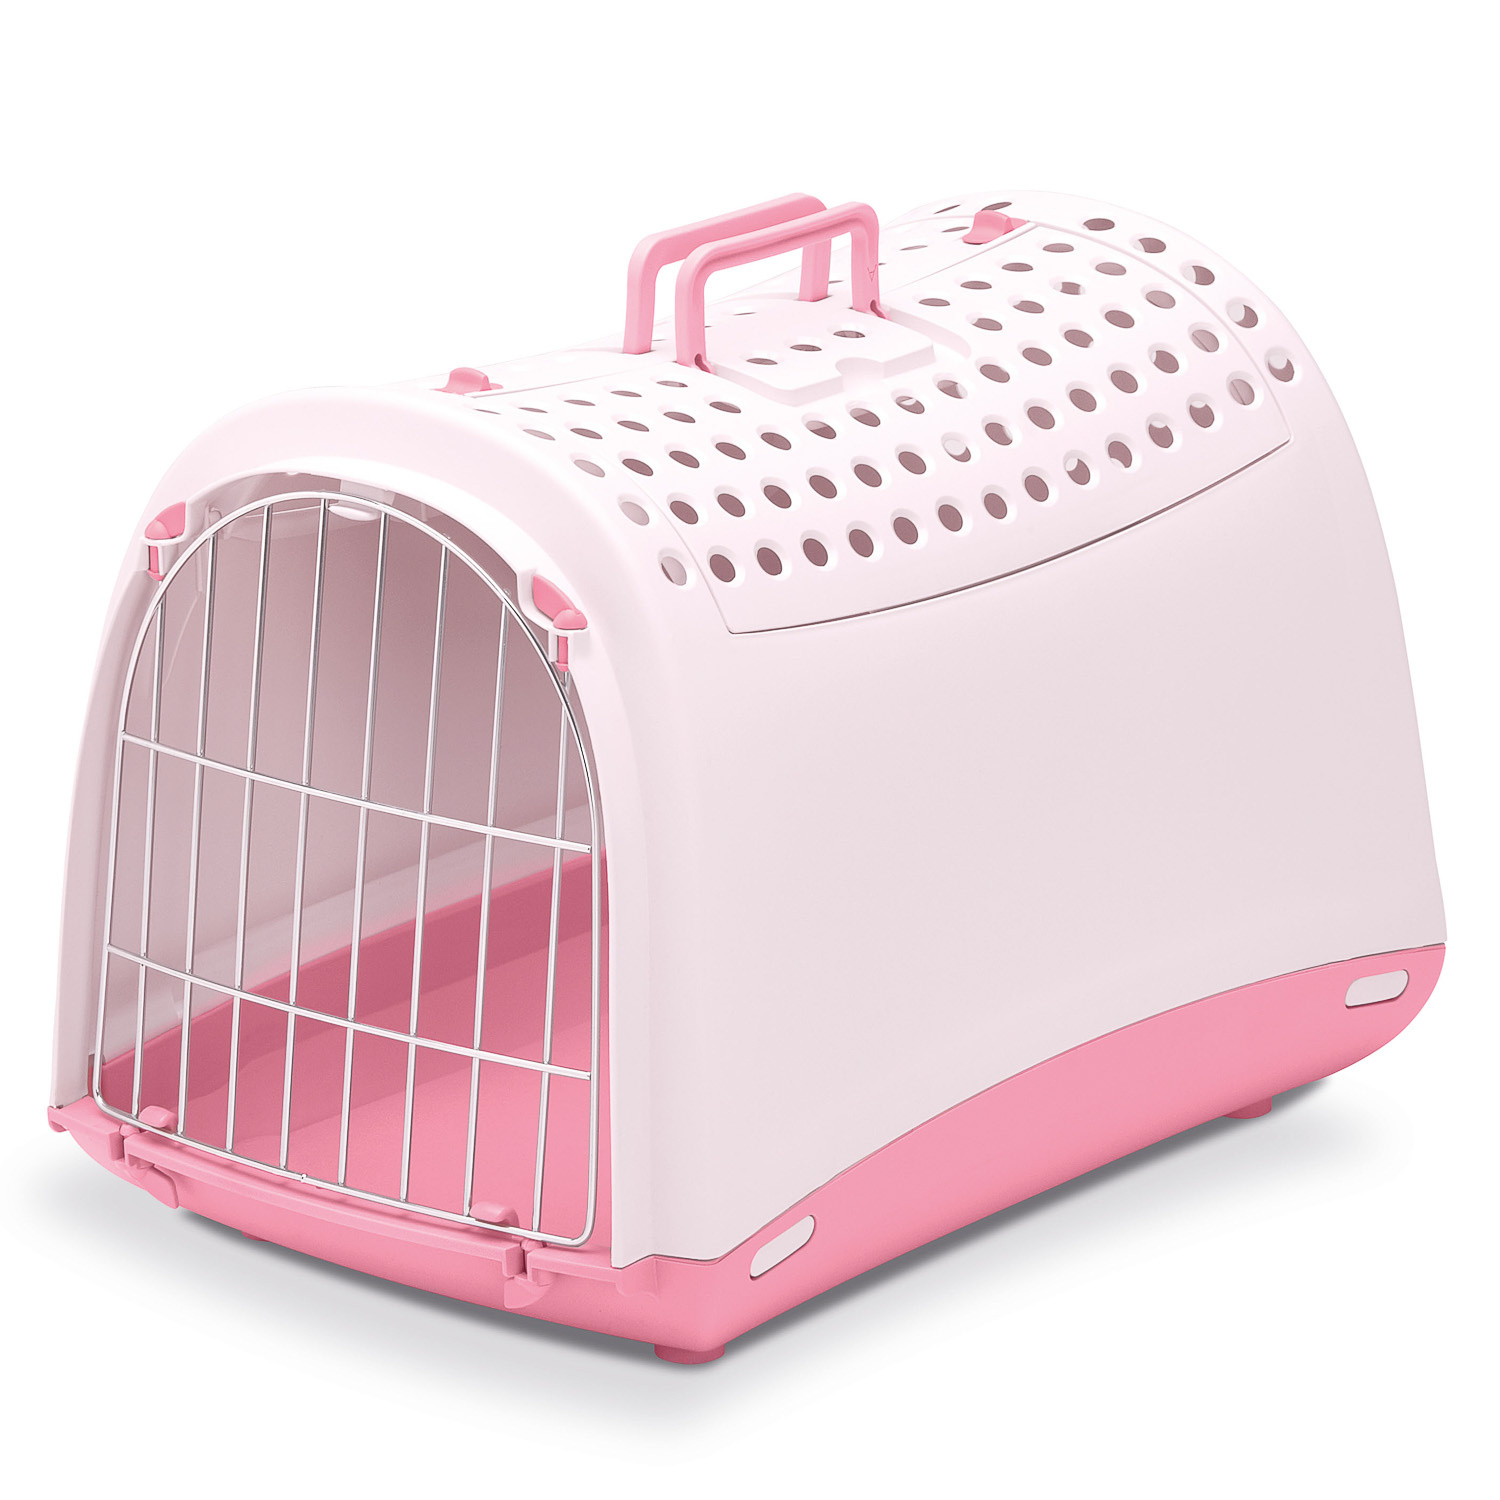 IMAC IMAC переноска для кошек и собак, нежно-розовый (1,37 кг) переноска для животных imac linus бежево серая 50х32х34 5 см